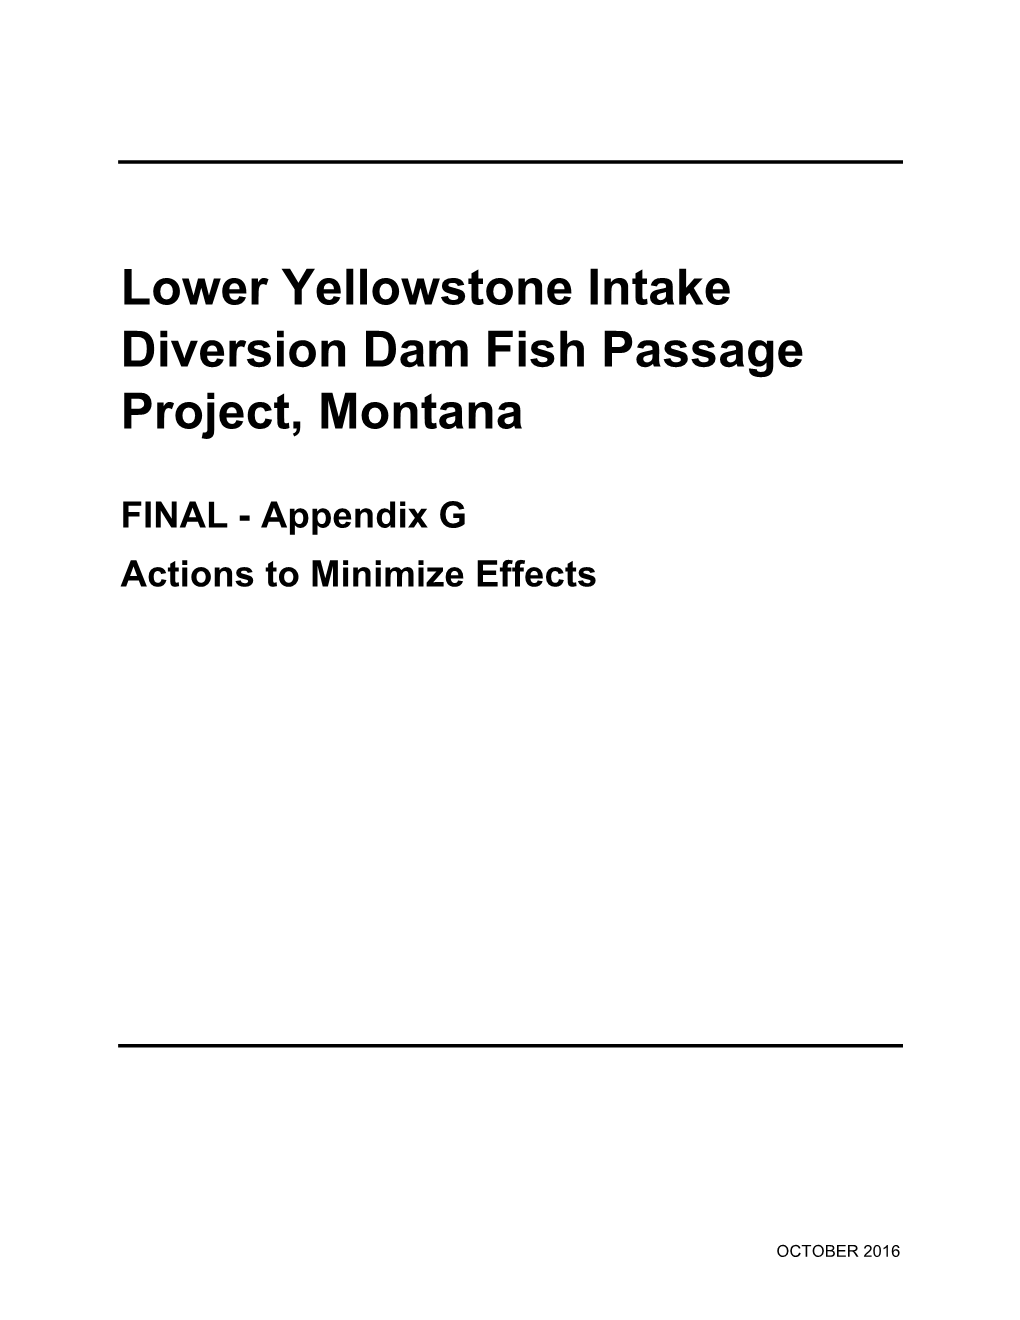 Lower Yellowstone Intake Diversion Dam Fish Passage Project, Montana